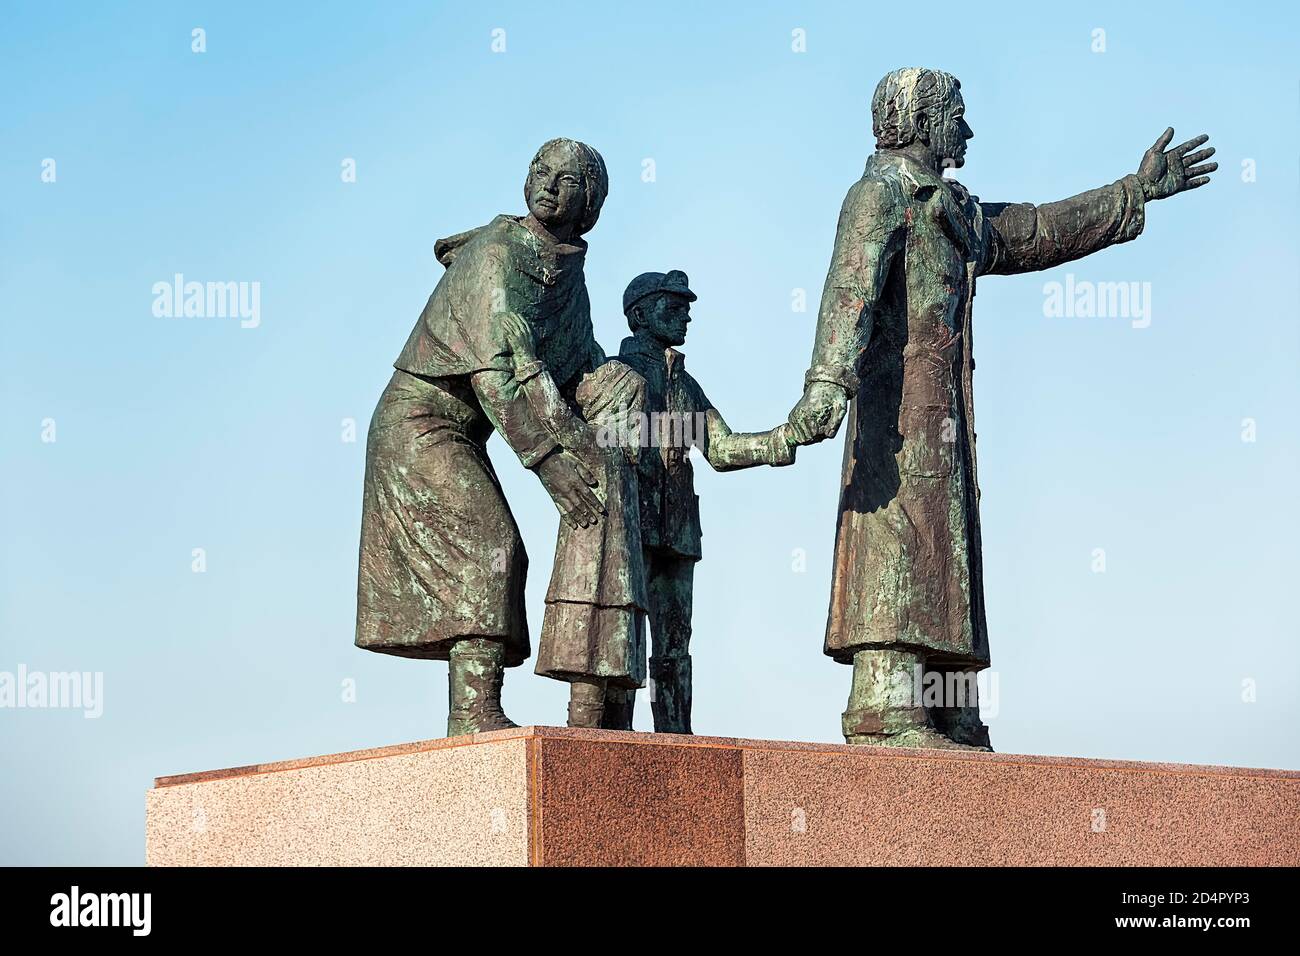 Monument de l'émigration, sculpture de bronze, famille avec deux enfants émigrer, migration, Homme en avant, Femme en arrière, Sculptor Frank Varga, Banque D'Images